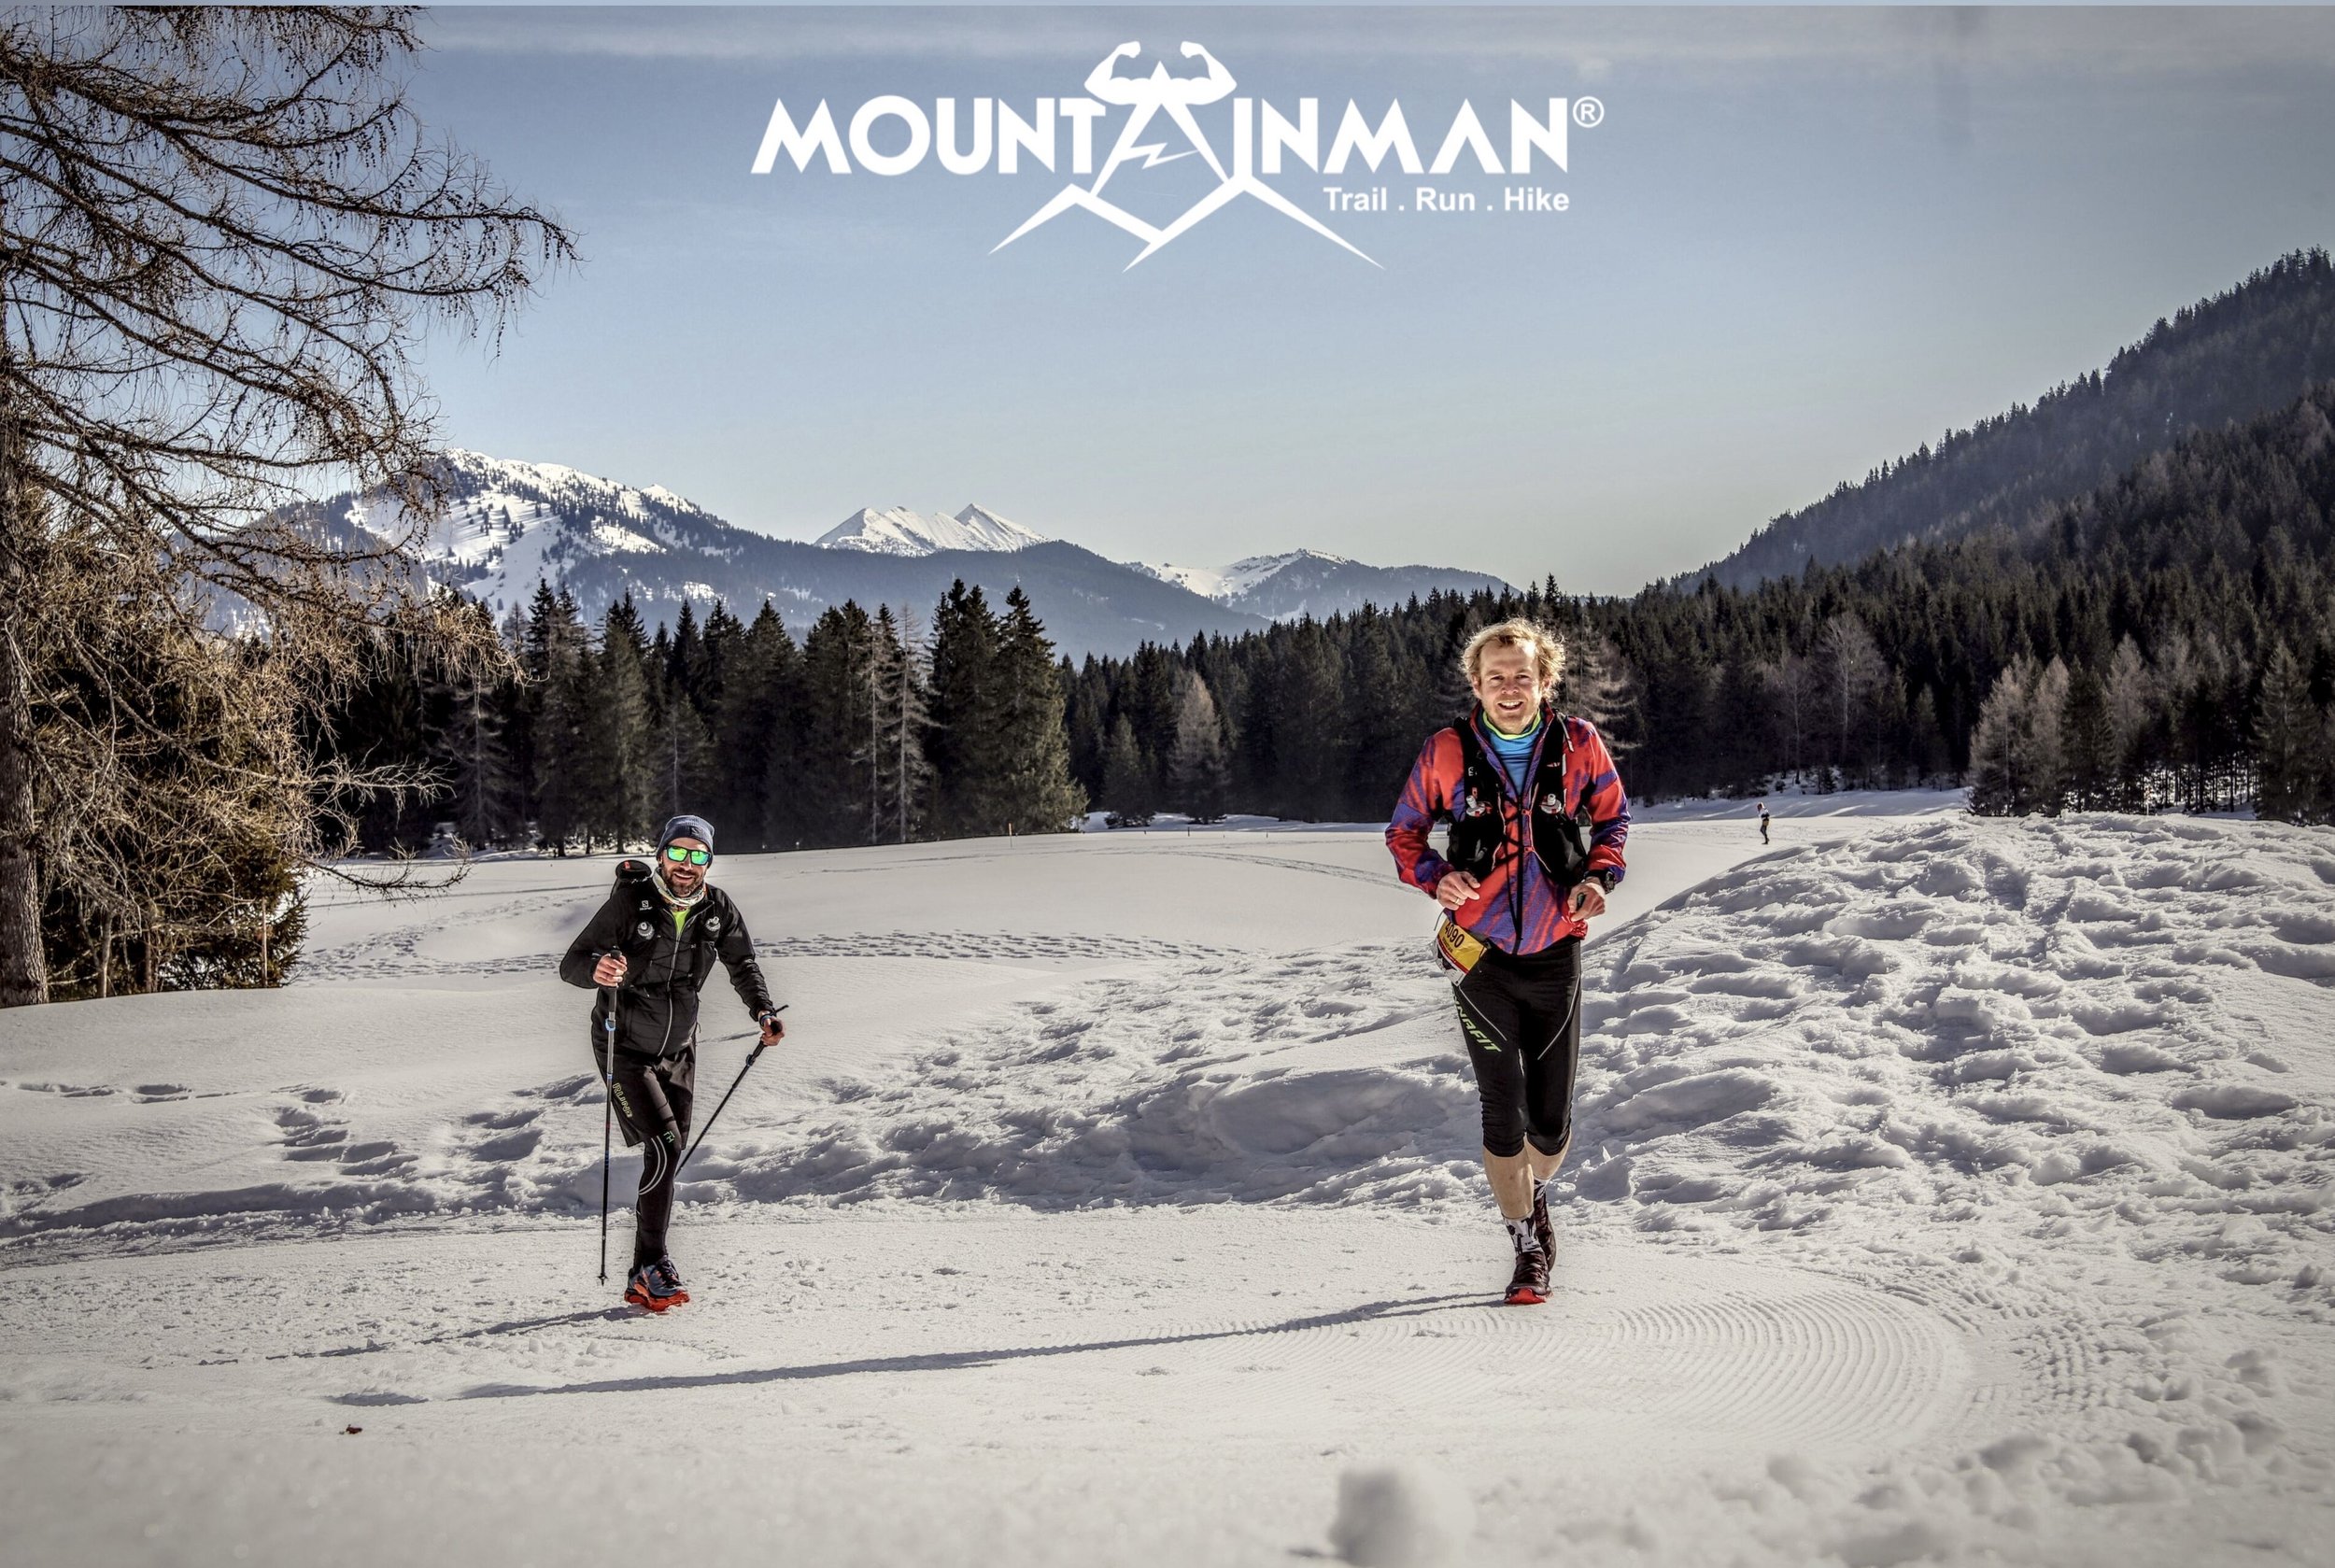 2 Teilnehmer bei der Veranstaltung "Mountainman" in der Winterlandschaft